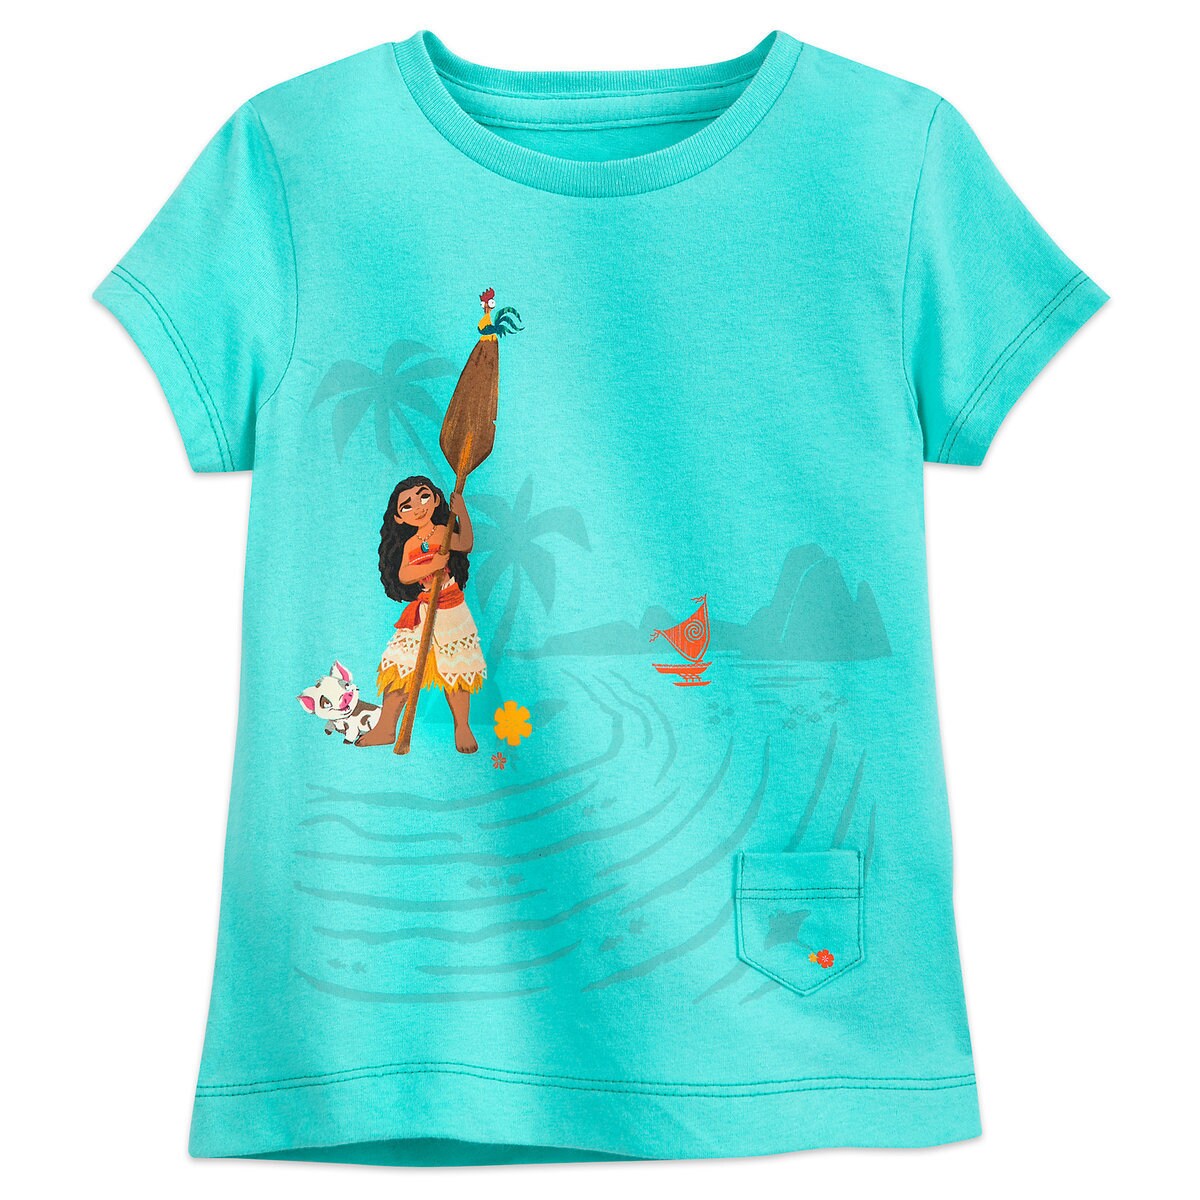 Moana T-Shirt for Girls - Sea Green